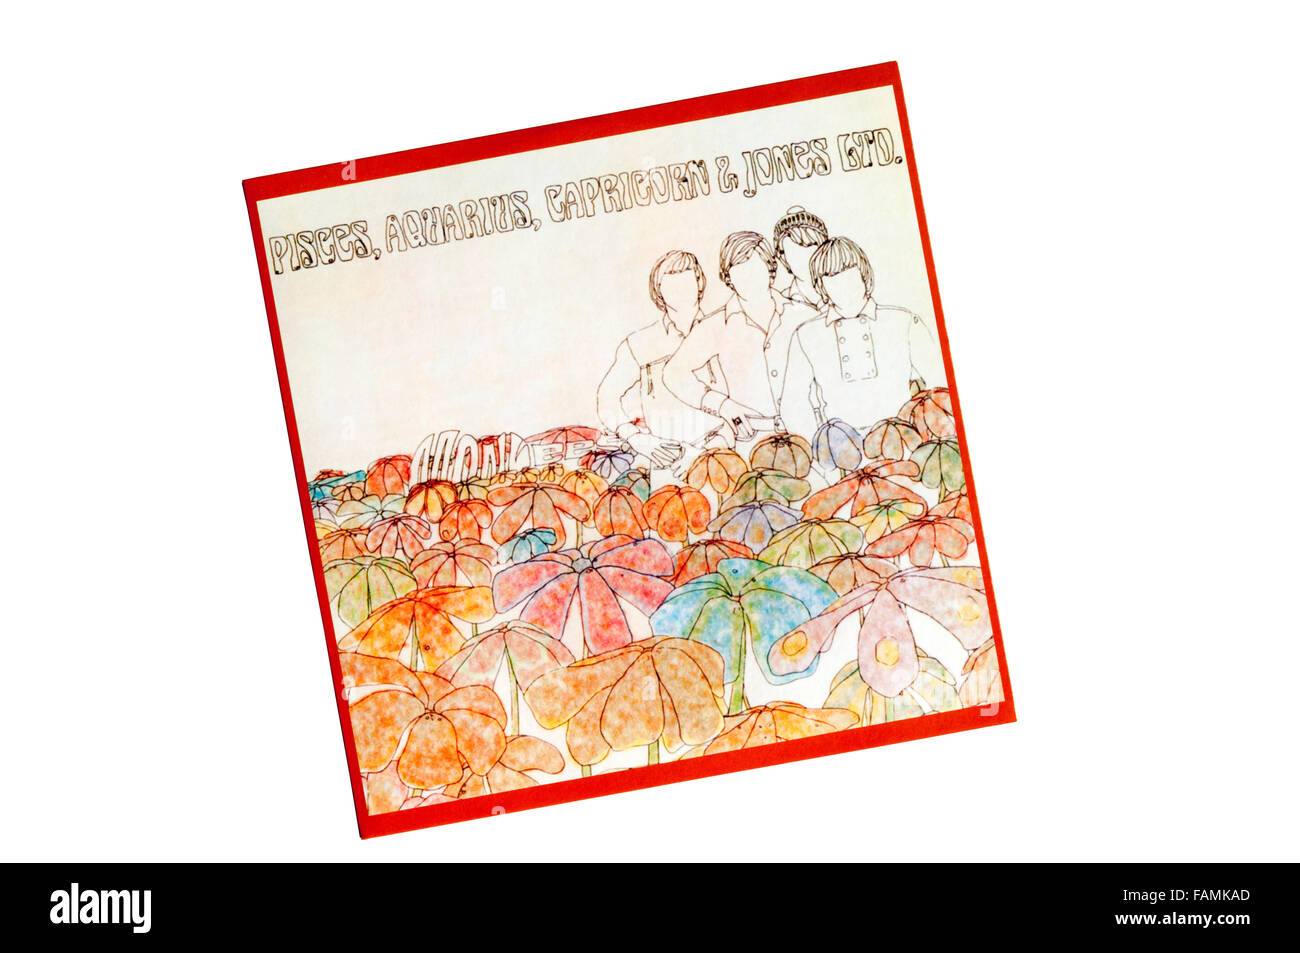 Capricornio, Acuario, Piscis & Jones Ltd. fue el cuarto disco de los Monkees. Publicado en 1967. Foto de stock